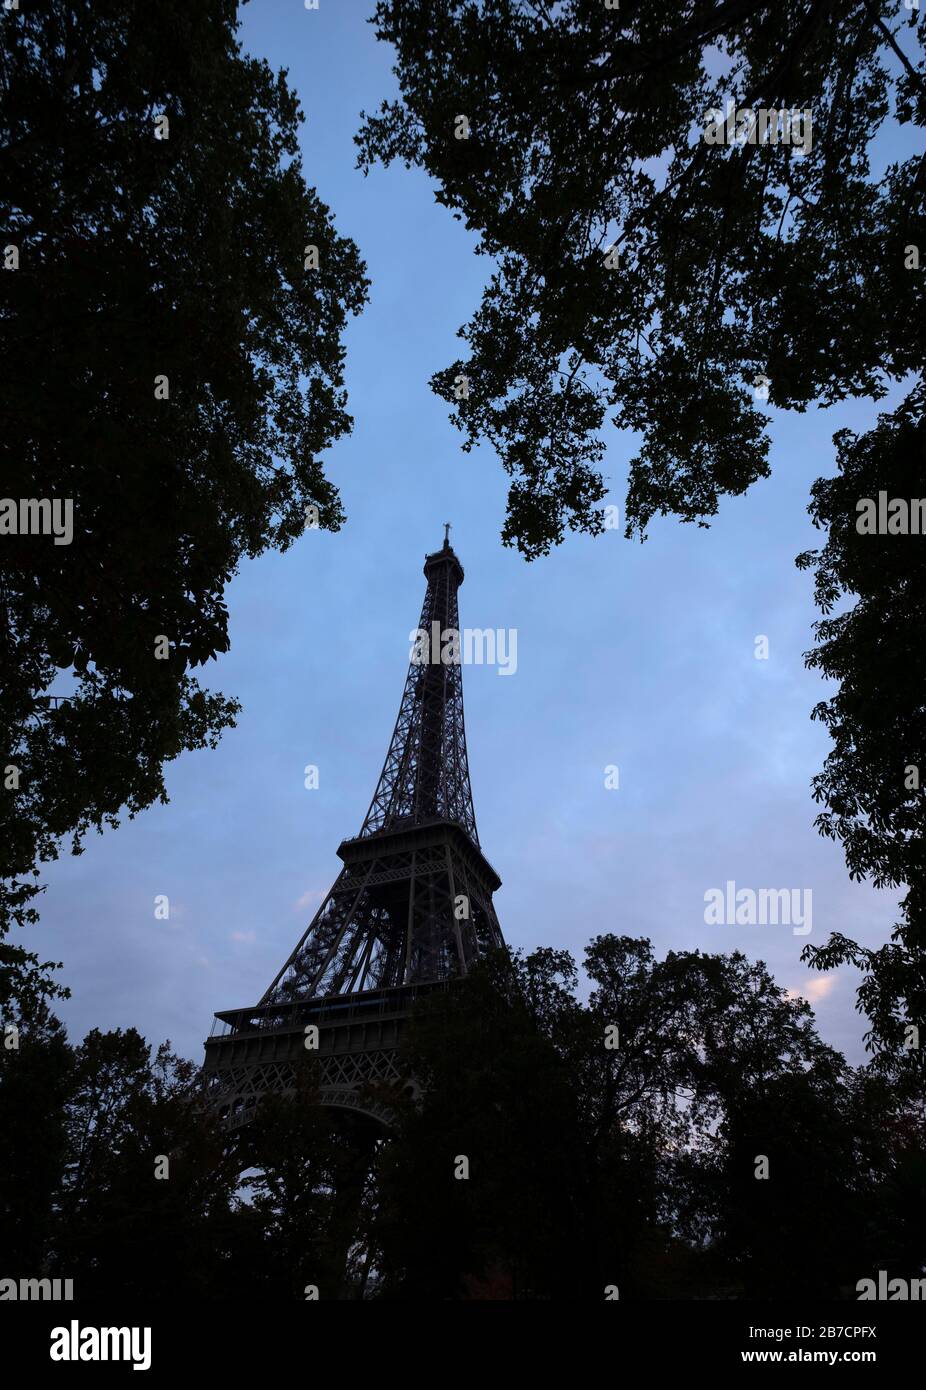 Silueta De La Torre Eiffel Con Rboles En Primer Plano En Par S